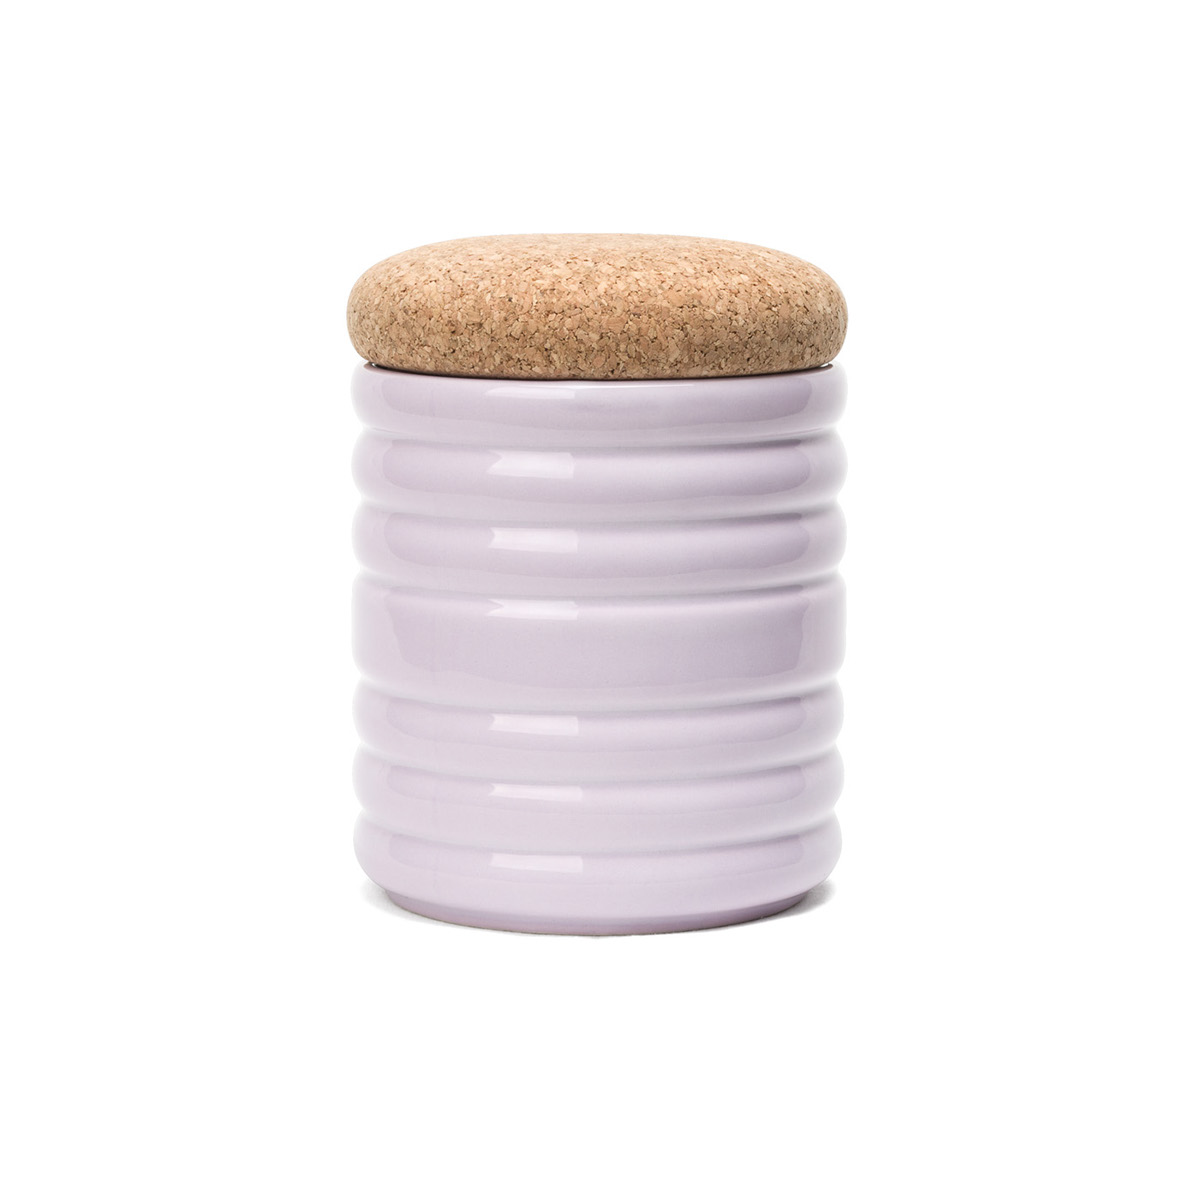 bussulot ceramic cork cork stopper enrico zanolla container glazed product photo hi res still photo